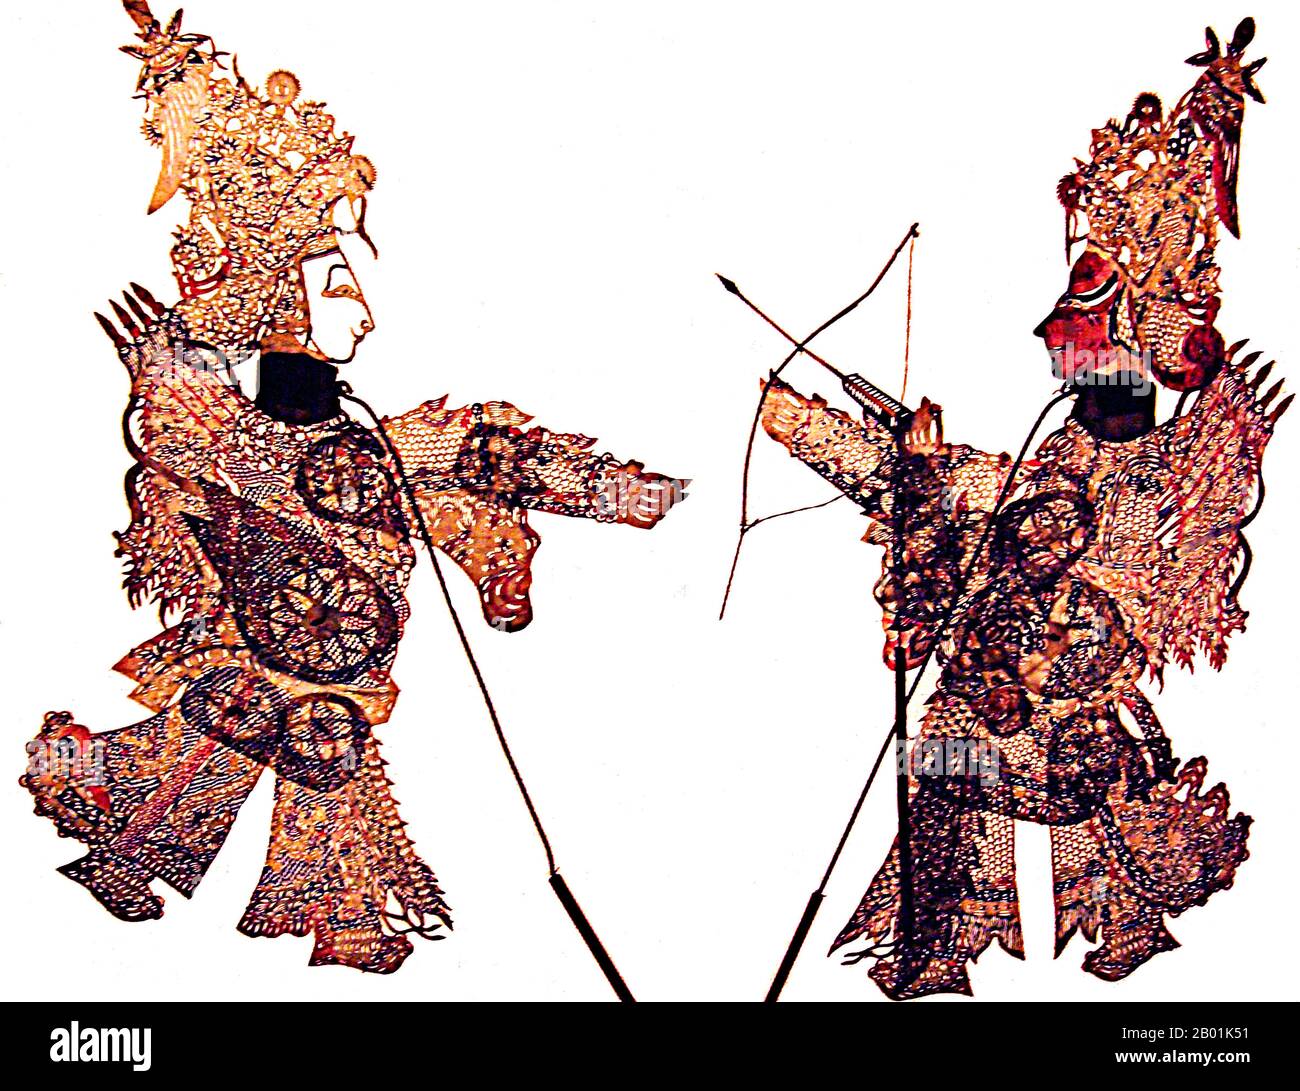 Chine : Figurines chinoises Shadow Play - deux guerriers ; Qianlong Set, c. 1780. Le jeu d'ombres (chinois : 皮影戏, Pí yĭng xì) ou marionnettes d'ombres est une forme ancienne de narration et de divertissement utilisant des figures opaques, souvent articulées devant un fond éclairé pour créer l'illusion d'images en mouvement. Il est populaire dans diverses cultures. À l'heure actuelle, plus de 20 pays sont connus pour avoir des troupes de shadow show. La marionnette de l'ombre est née pendant la dynastie Han lorsque l'une des concubines de l'empereur Wudi de Han meurt d'une maladie. Banque D'Images